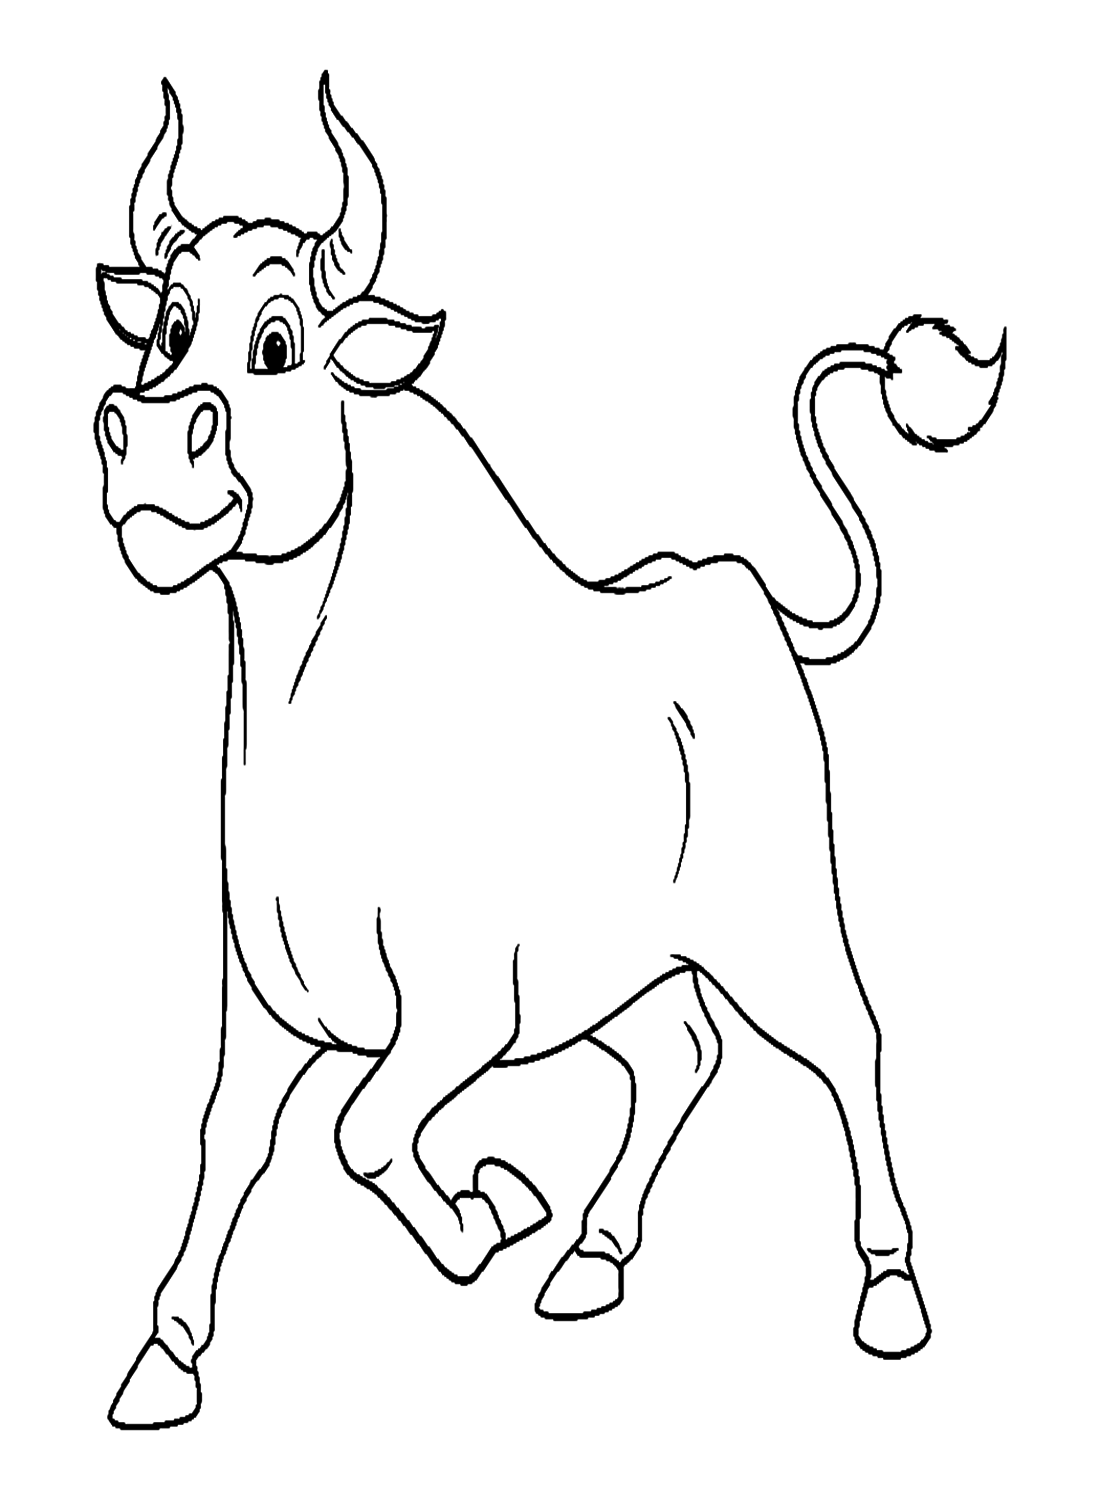 Toro semplice da Bull